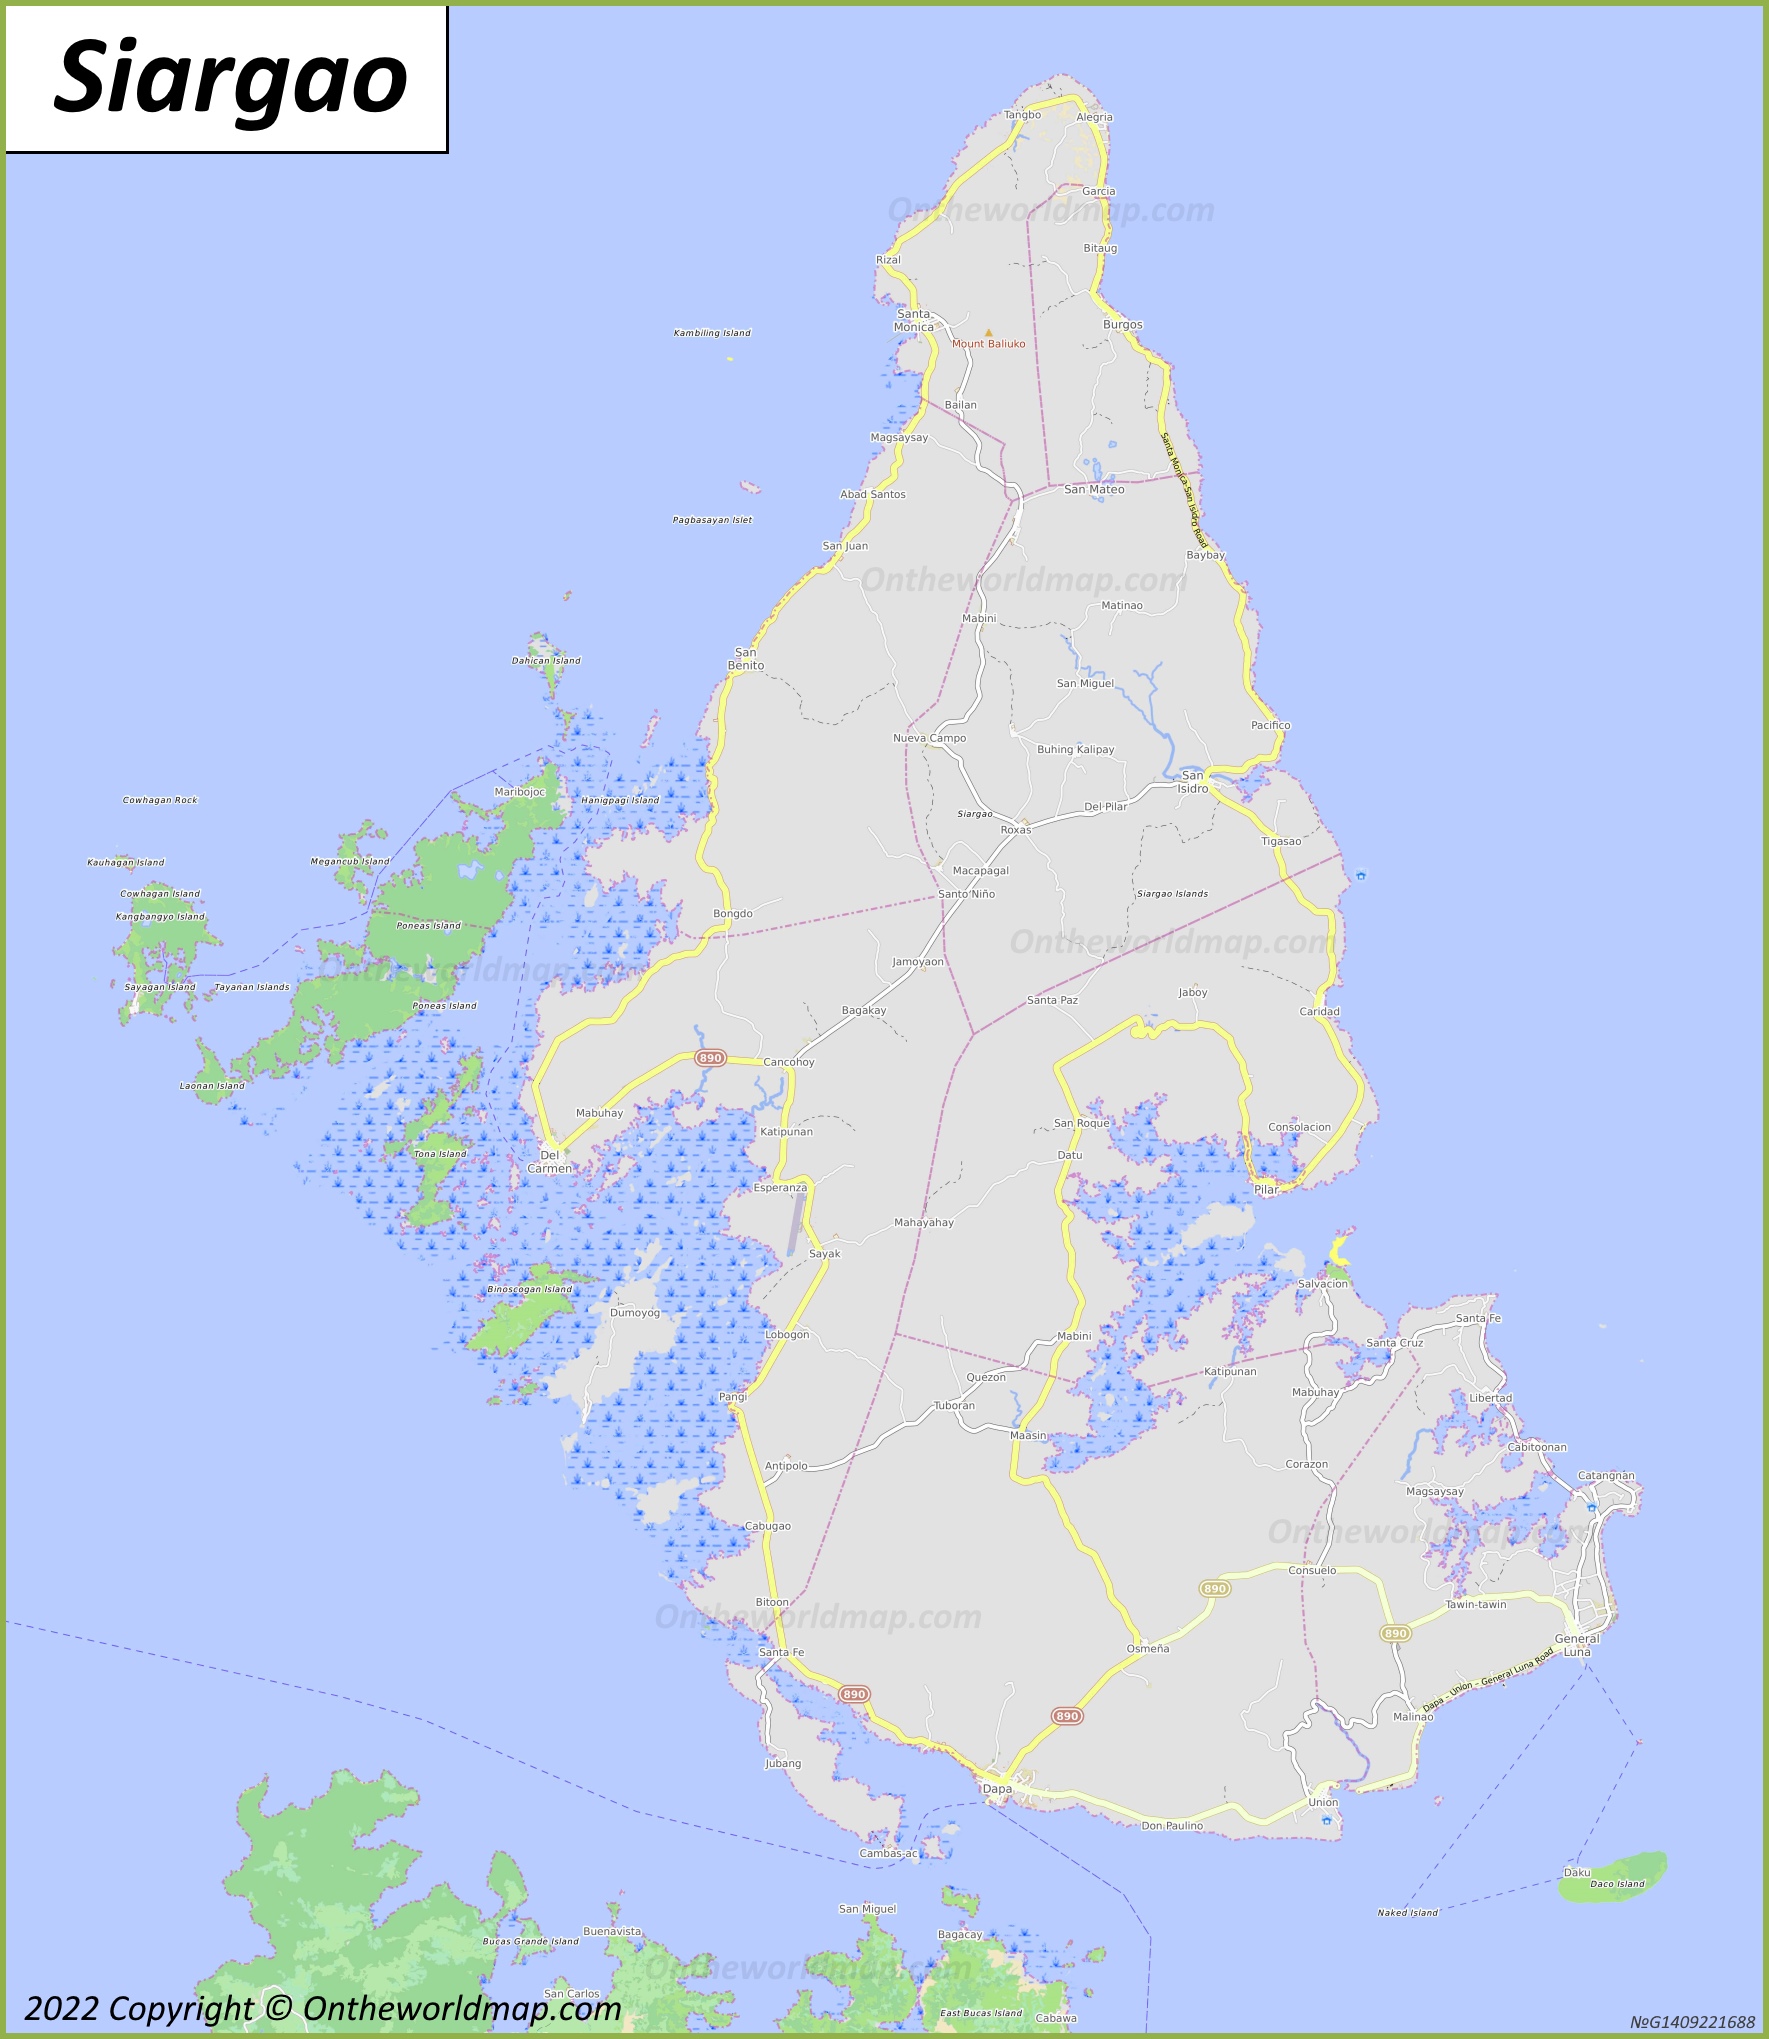 Map of Siargao Island